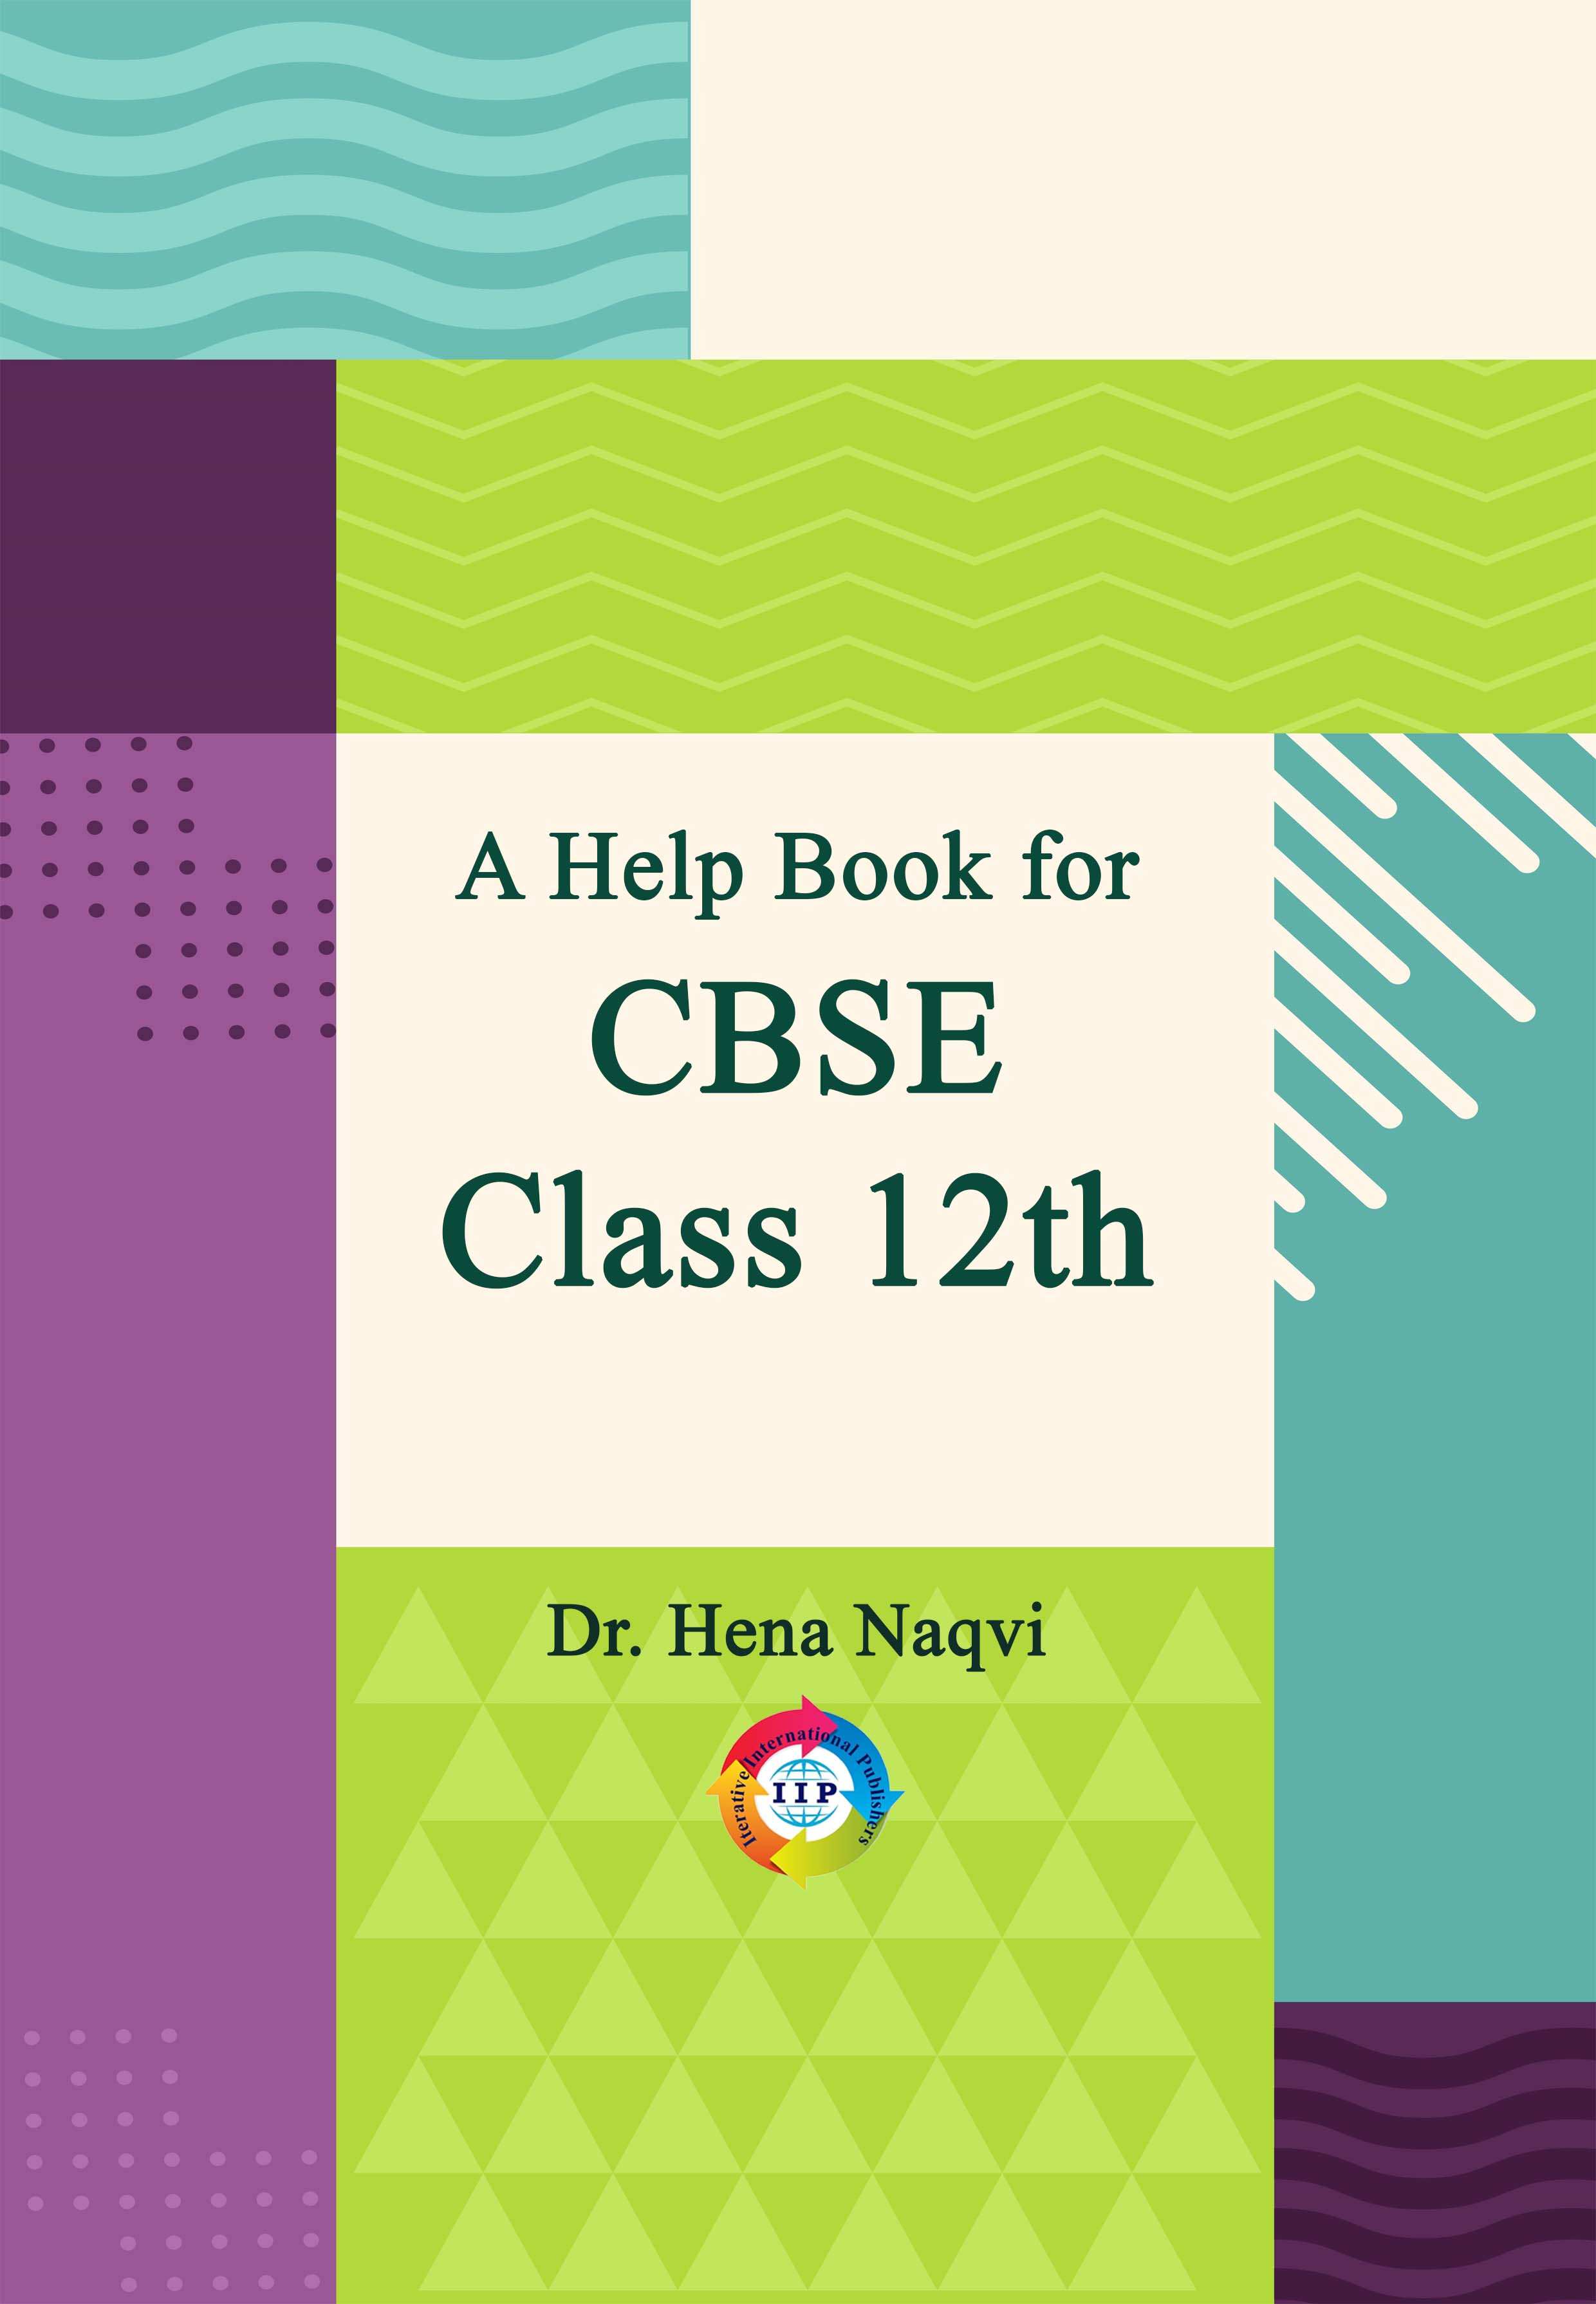 A HELP BOOK FOR CBSE CLASS 12